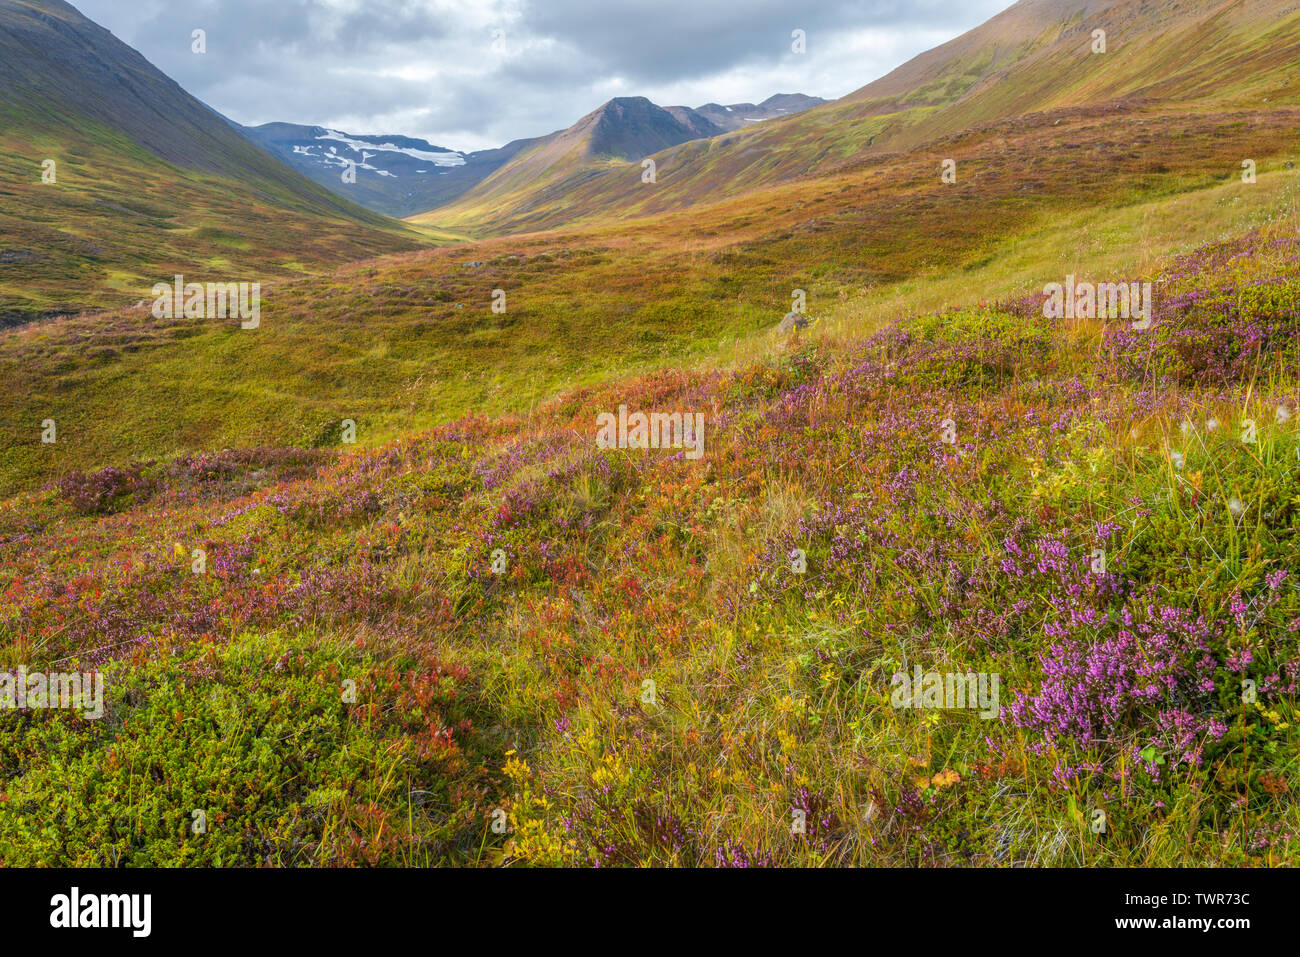 Montagnes islandaises et de la toundra arctique arctique, paysage montagneux. Fleurs sauvages fleurissent dans les montagnes de l'Islande, la randonnée dans la toundra. Banque D'Images